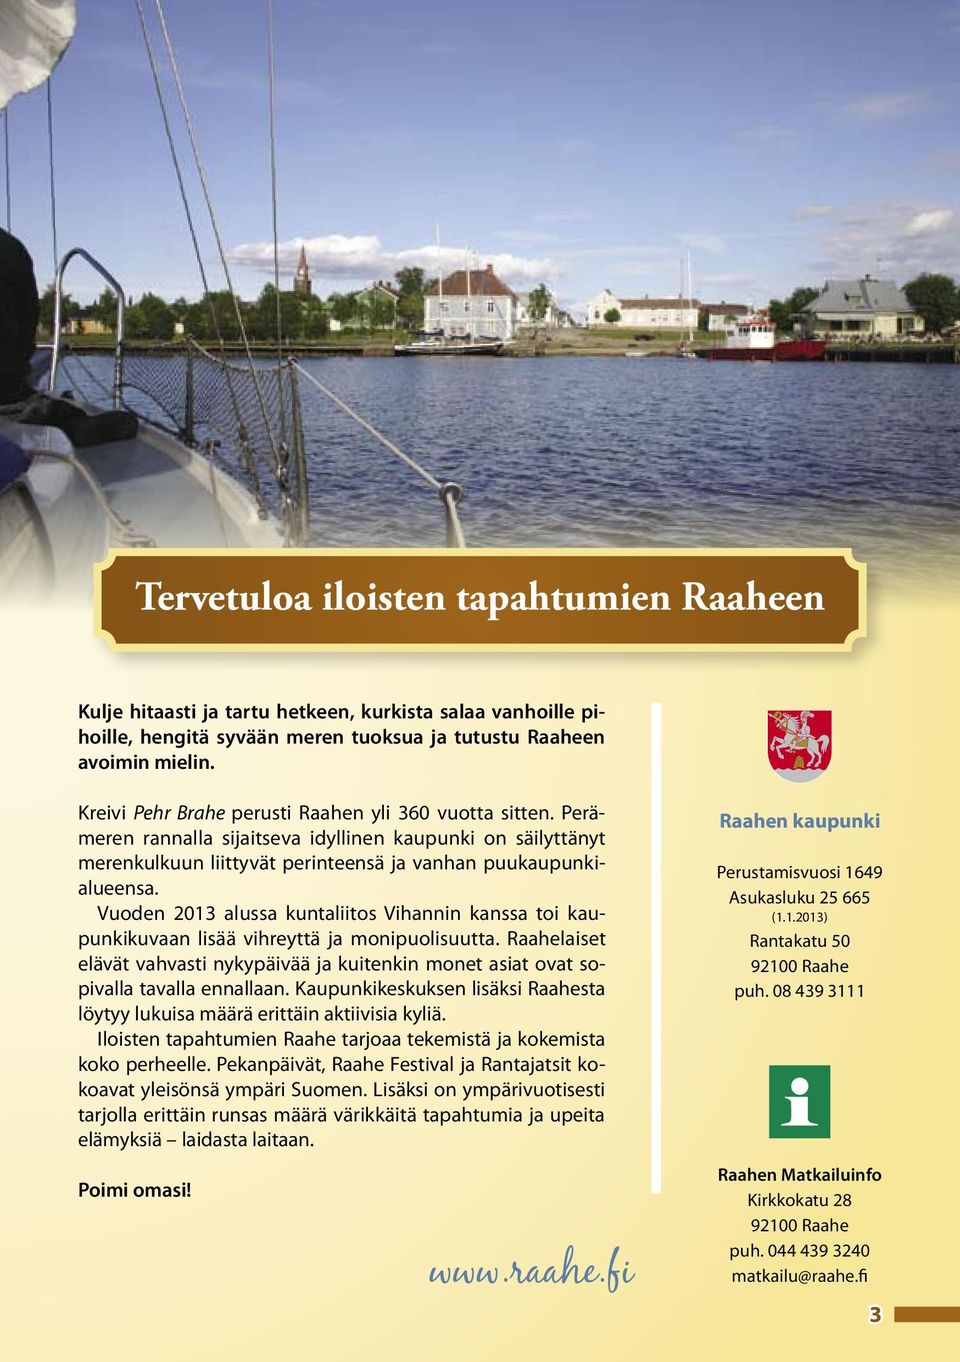 Vuoden 2013 alussa kuntaliitos Vihannin kanssa toi kaupunkikuvaan lisää vihreyttä ja monipuolisuutta. Raahelaiset elävät vahvasti nykypäivää ja kuitenkin monet asiat ovat sopivalla tavalla ennallaan.